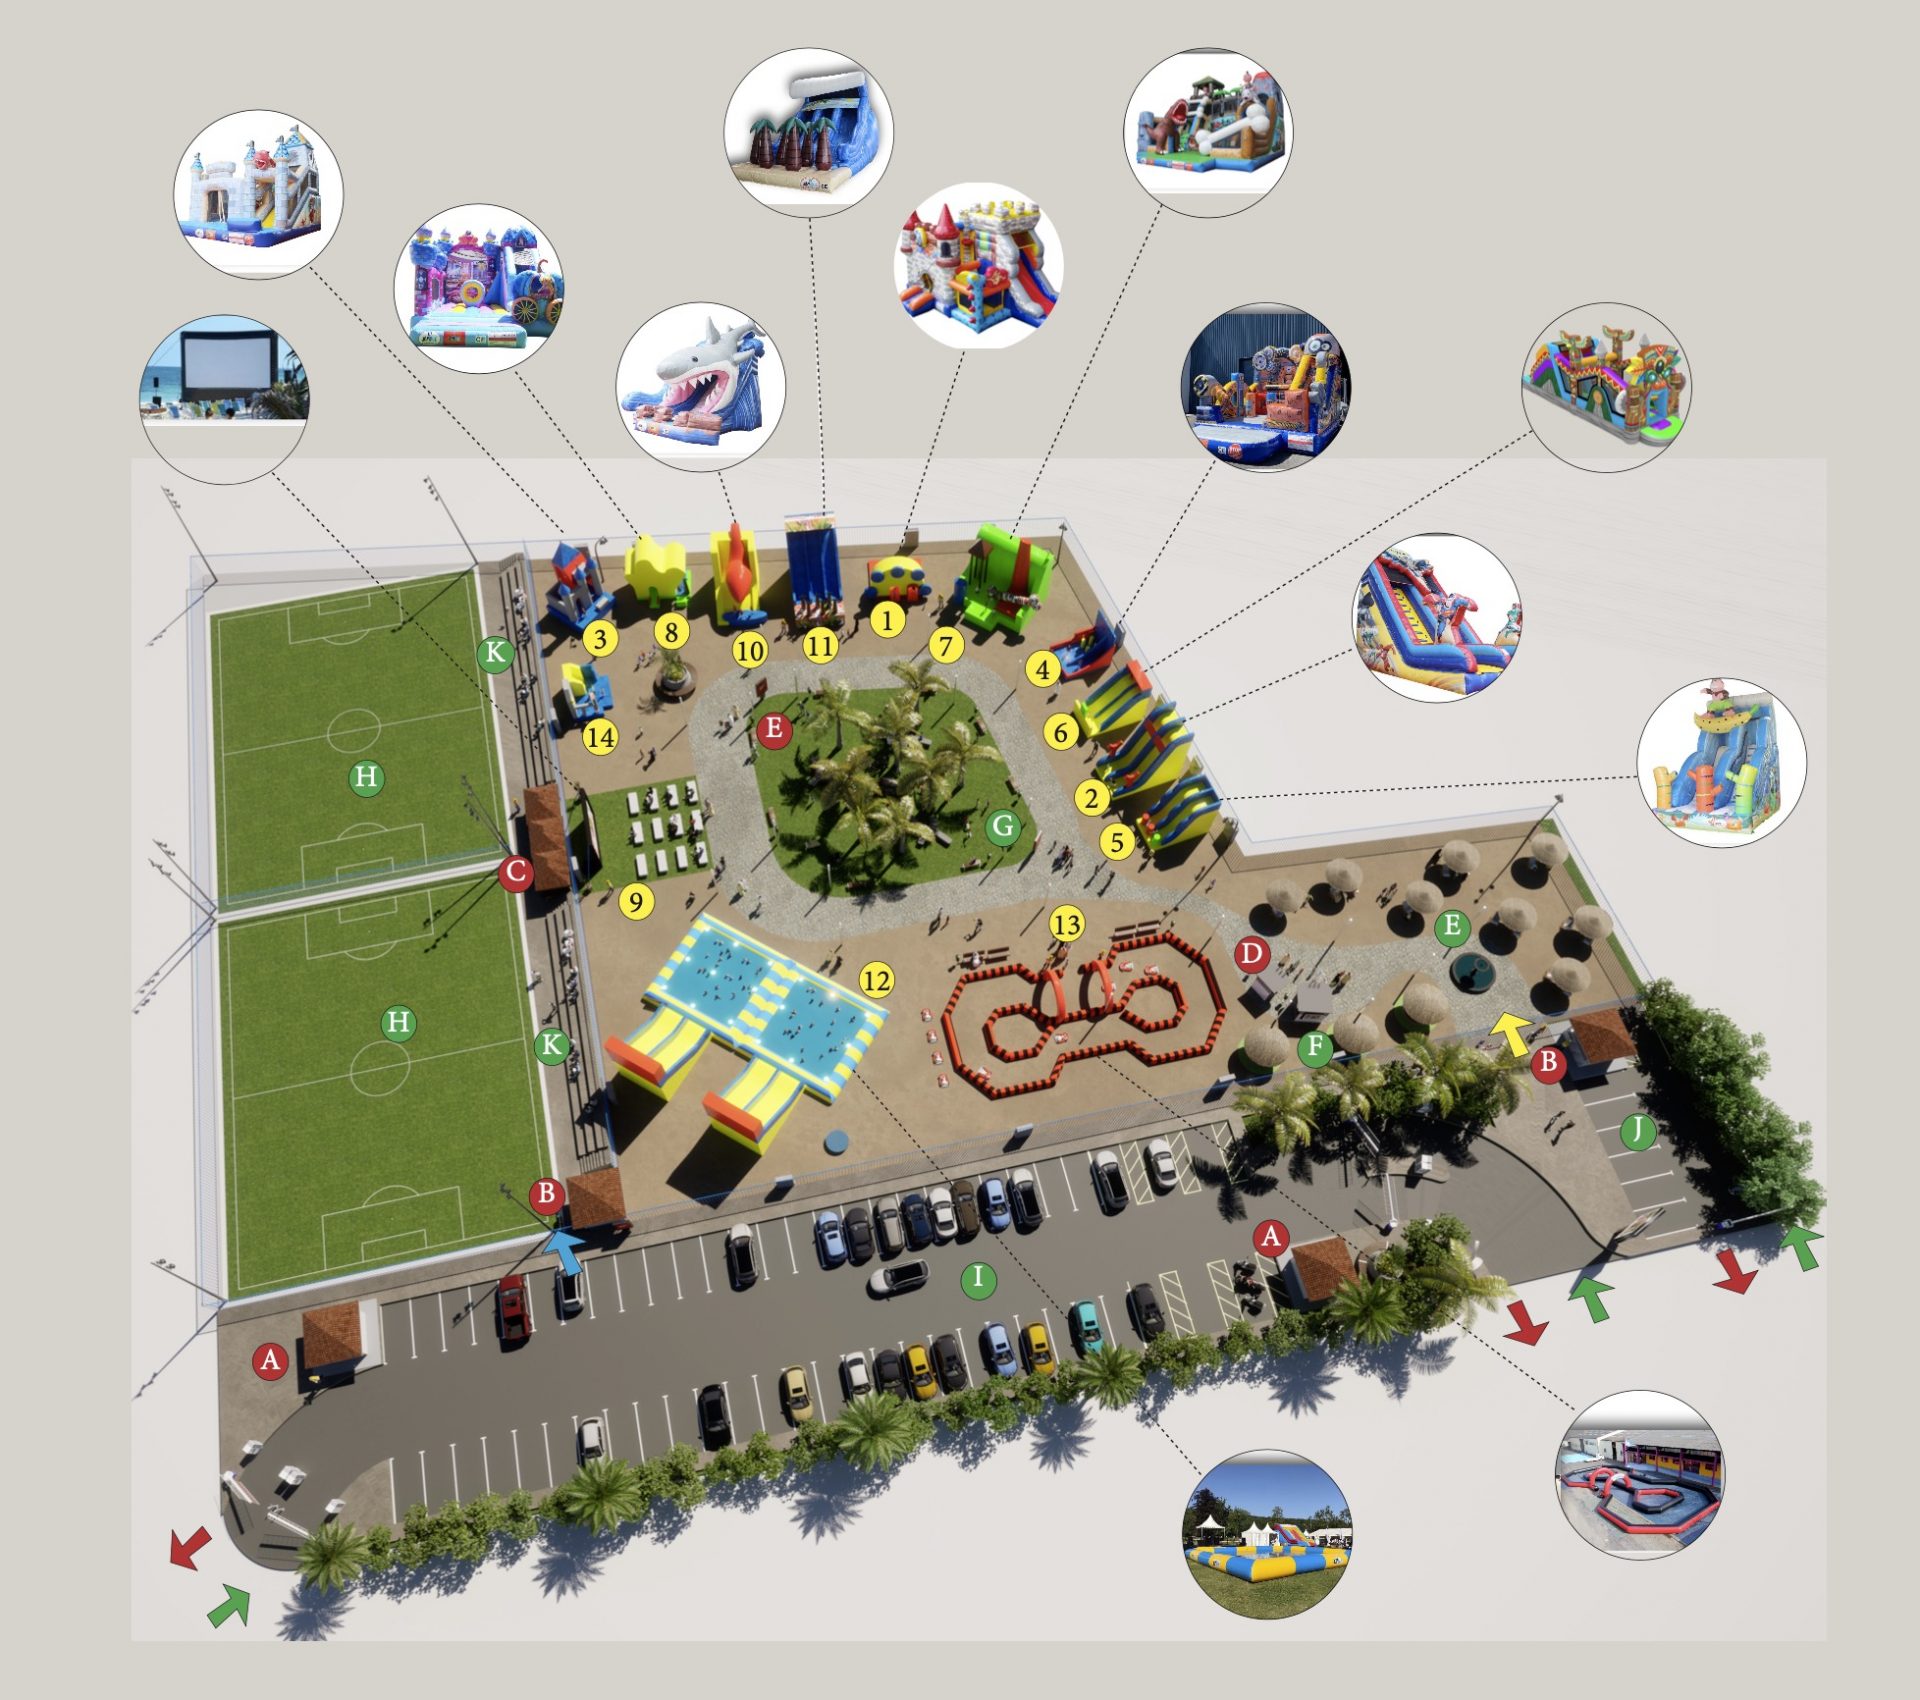 Conception structures de jeux parc indoor - ADJ